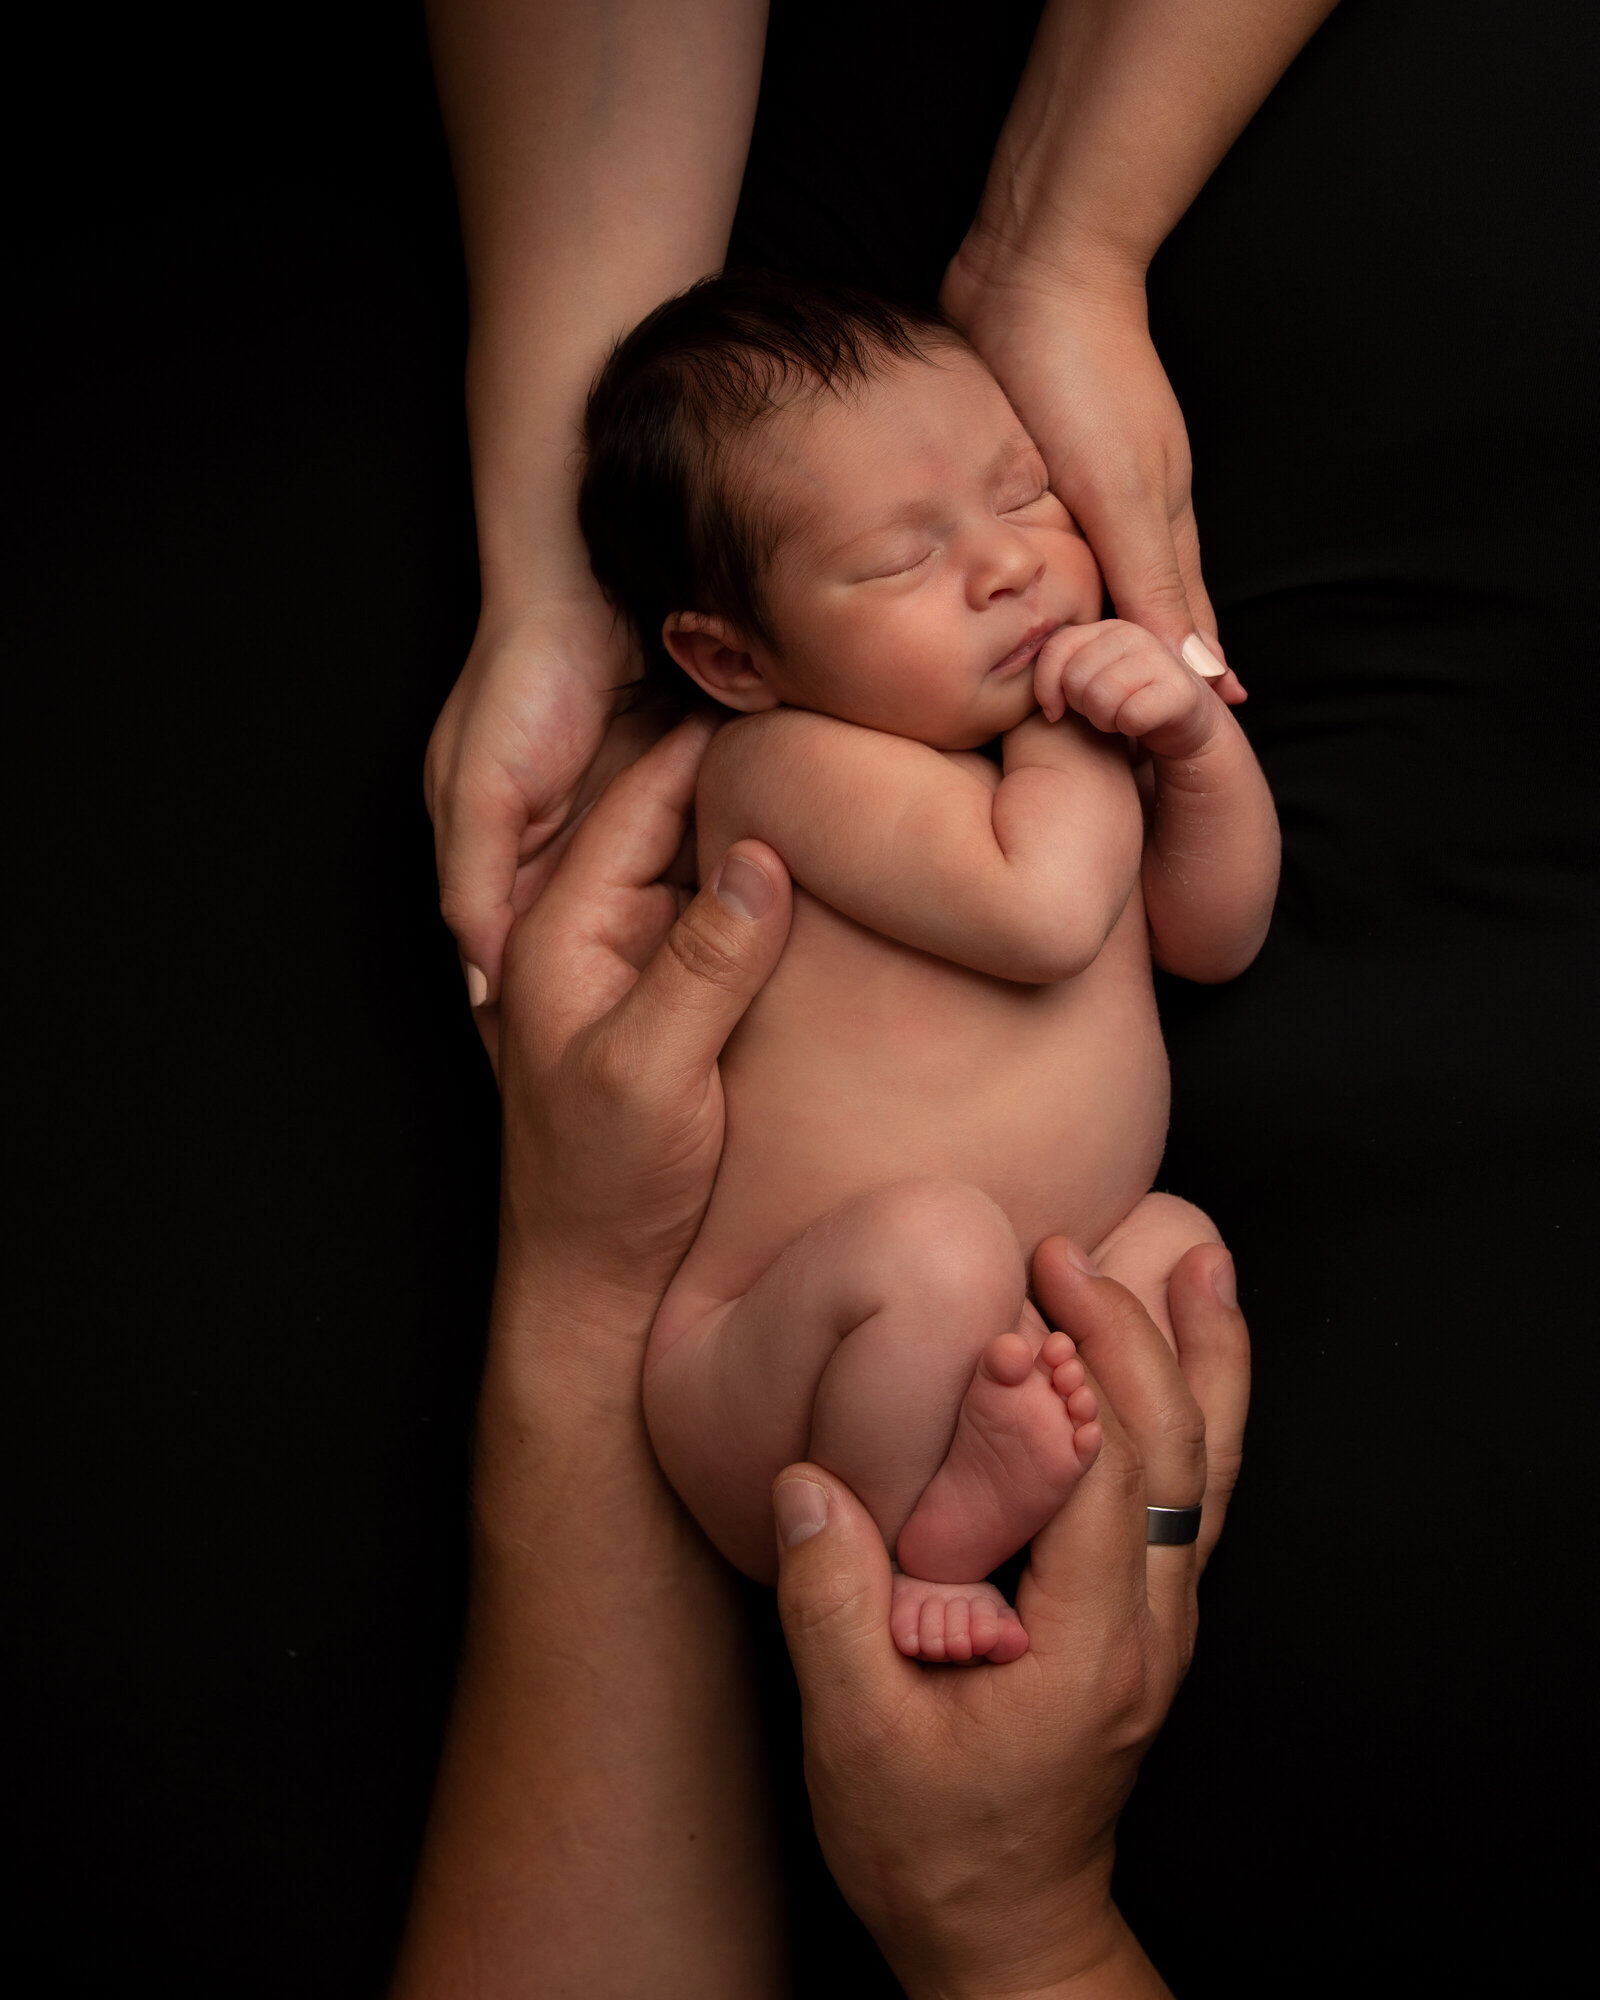 Baby girl sleeping in her parents hands